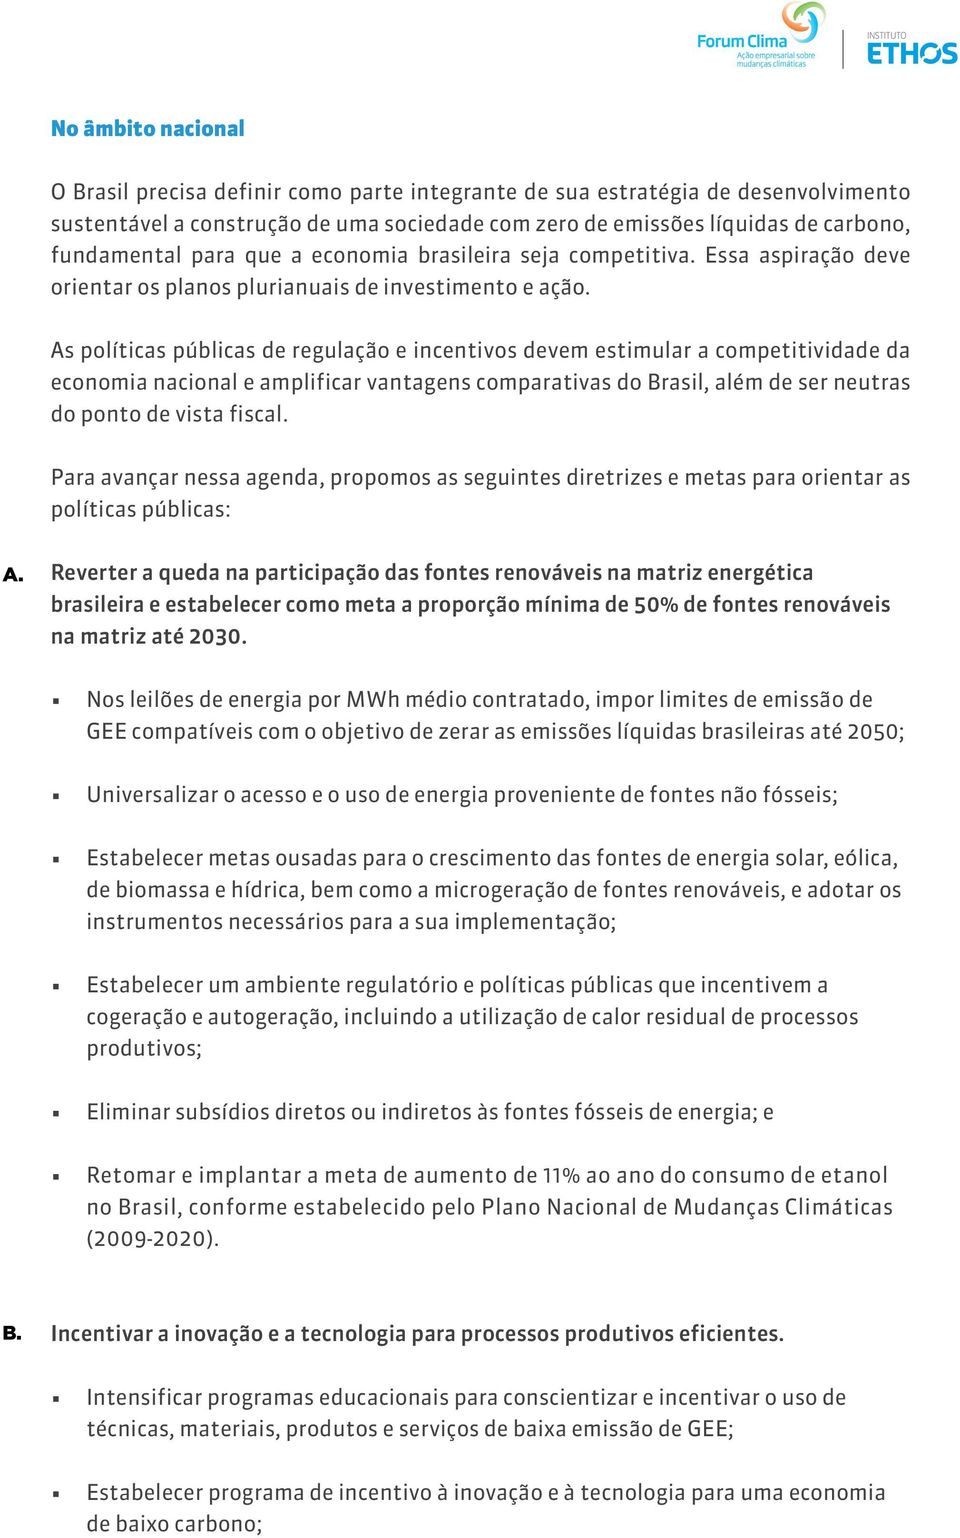 As políticas públicas de regulação e incentivos devem estimular a competitividade da economia nacional e amplificar vantagens comparativas do Brasil, além de ser neutras do ponto de vista fiscal.